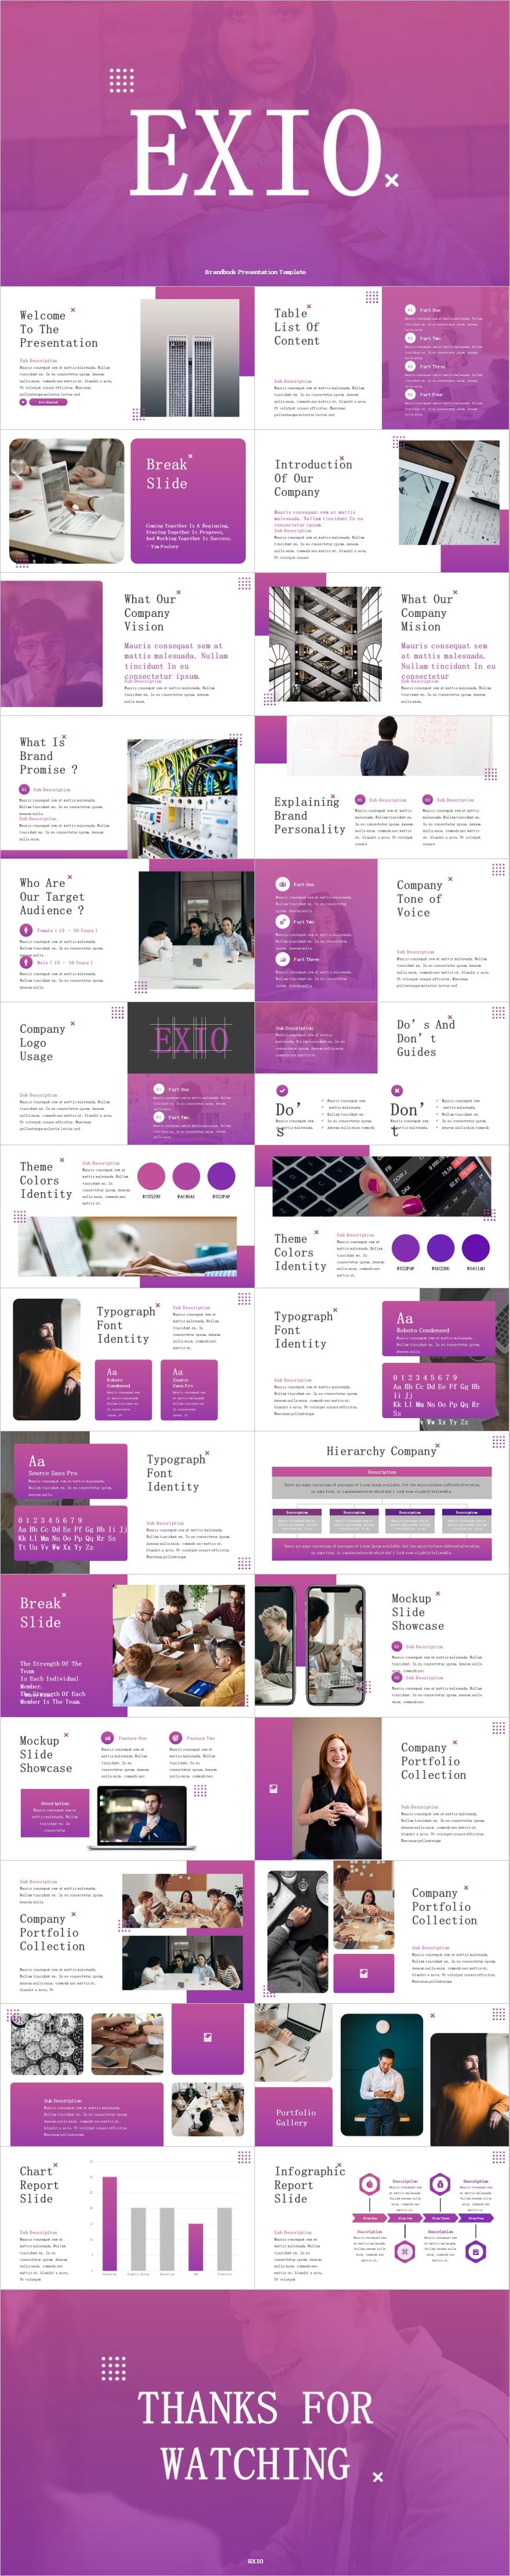 紫色简约风企业宣传介绍PPT模板下载